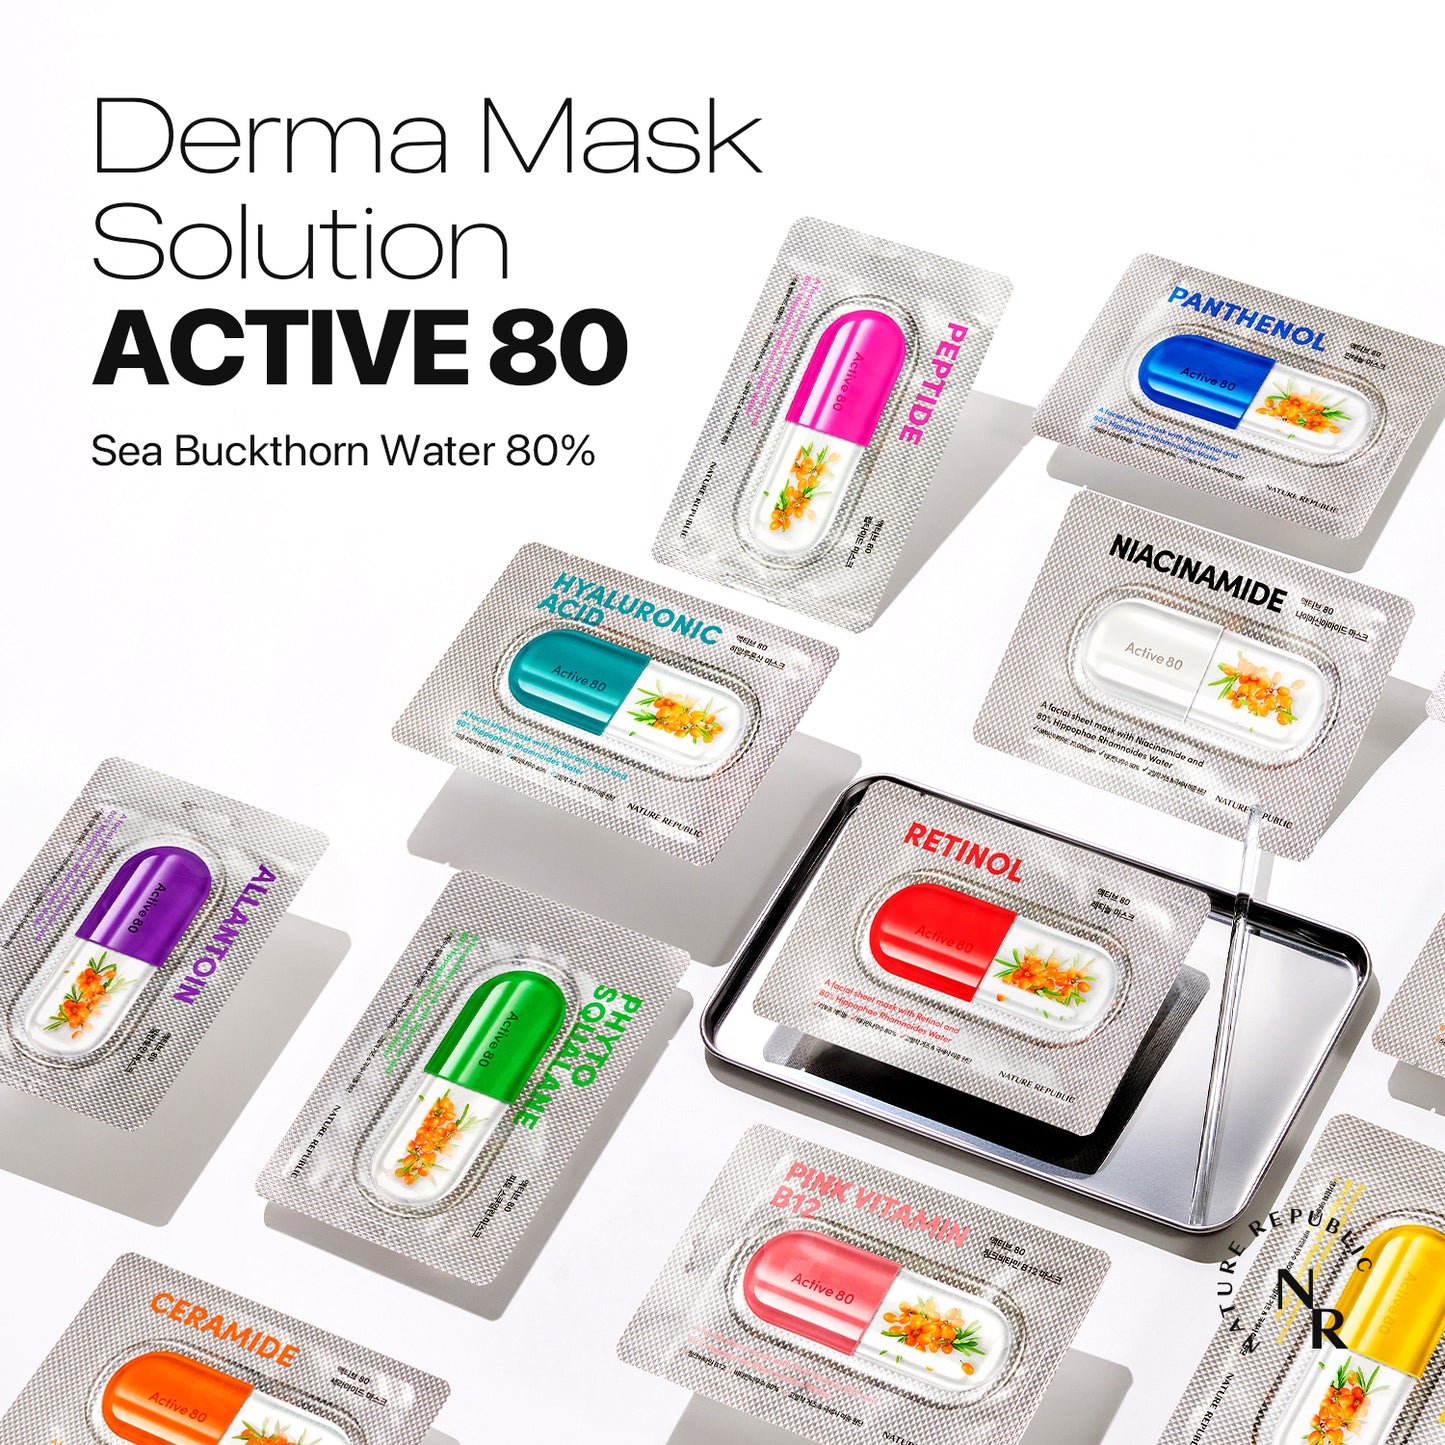 ACTIVE 80 Pink Vitamin B12 Mask